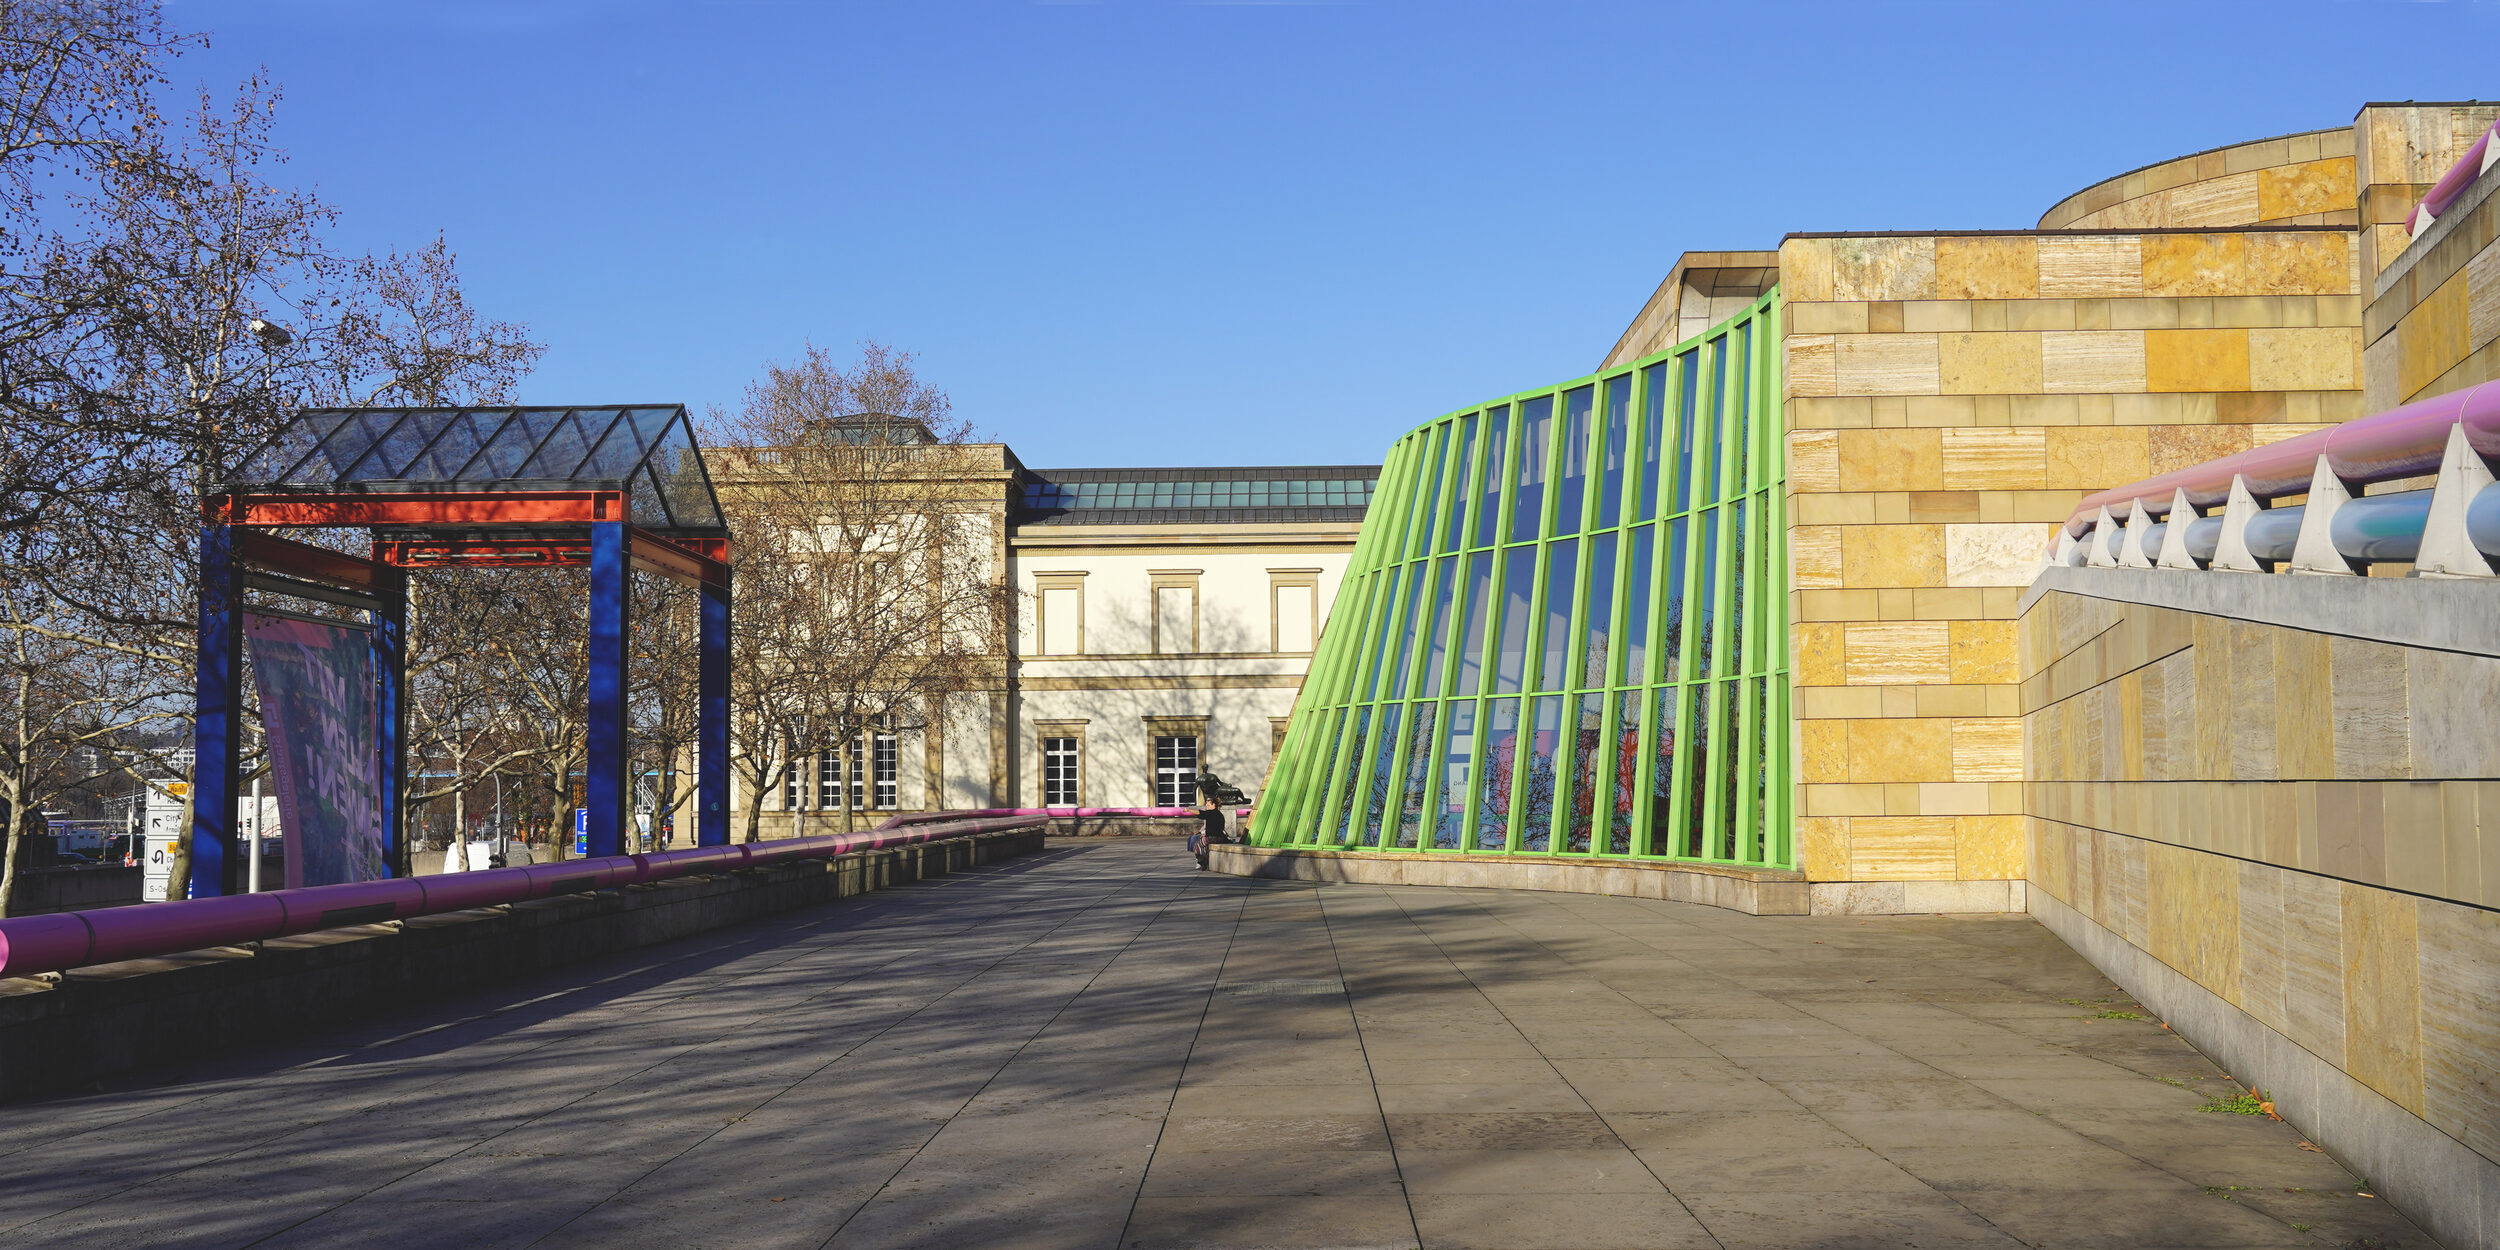 Neue Staatsgalerie mit geschwungener Travertin-Fassade, mit pinken und blauen Handläufen an den Treppen sowie grünen Stahlträgern.